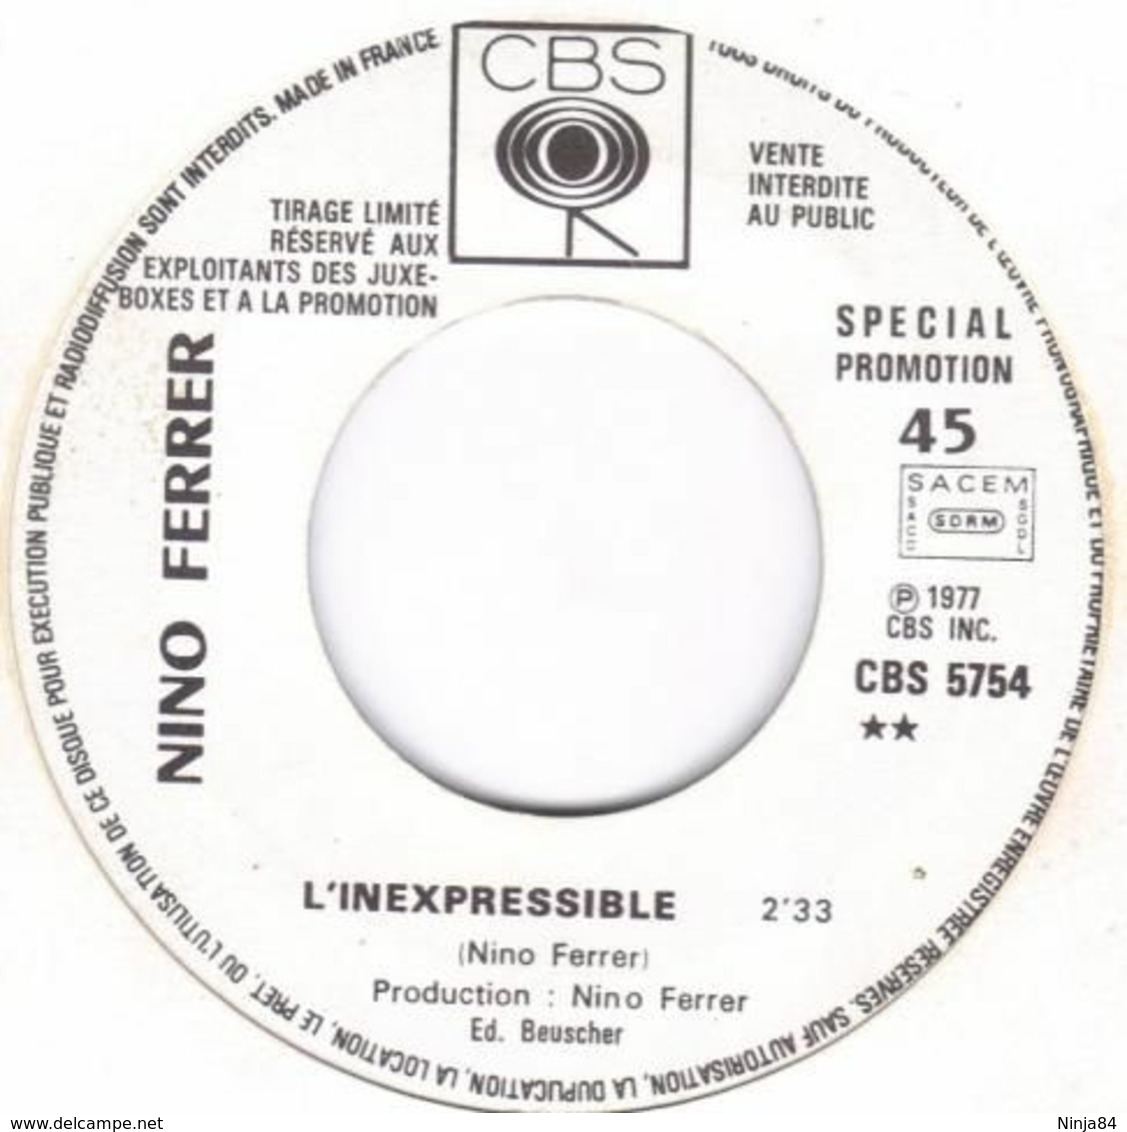 SP 45 RPM (7")  Nino Ferrer  "  Joseph Joseph  "  Promo - Collector's Editions